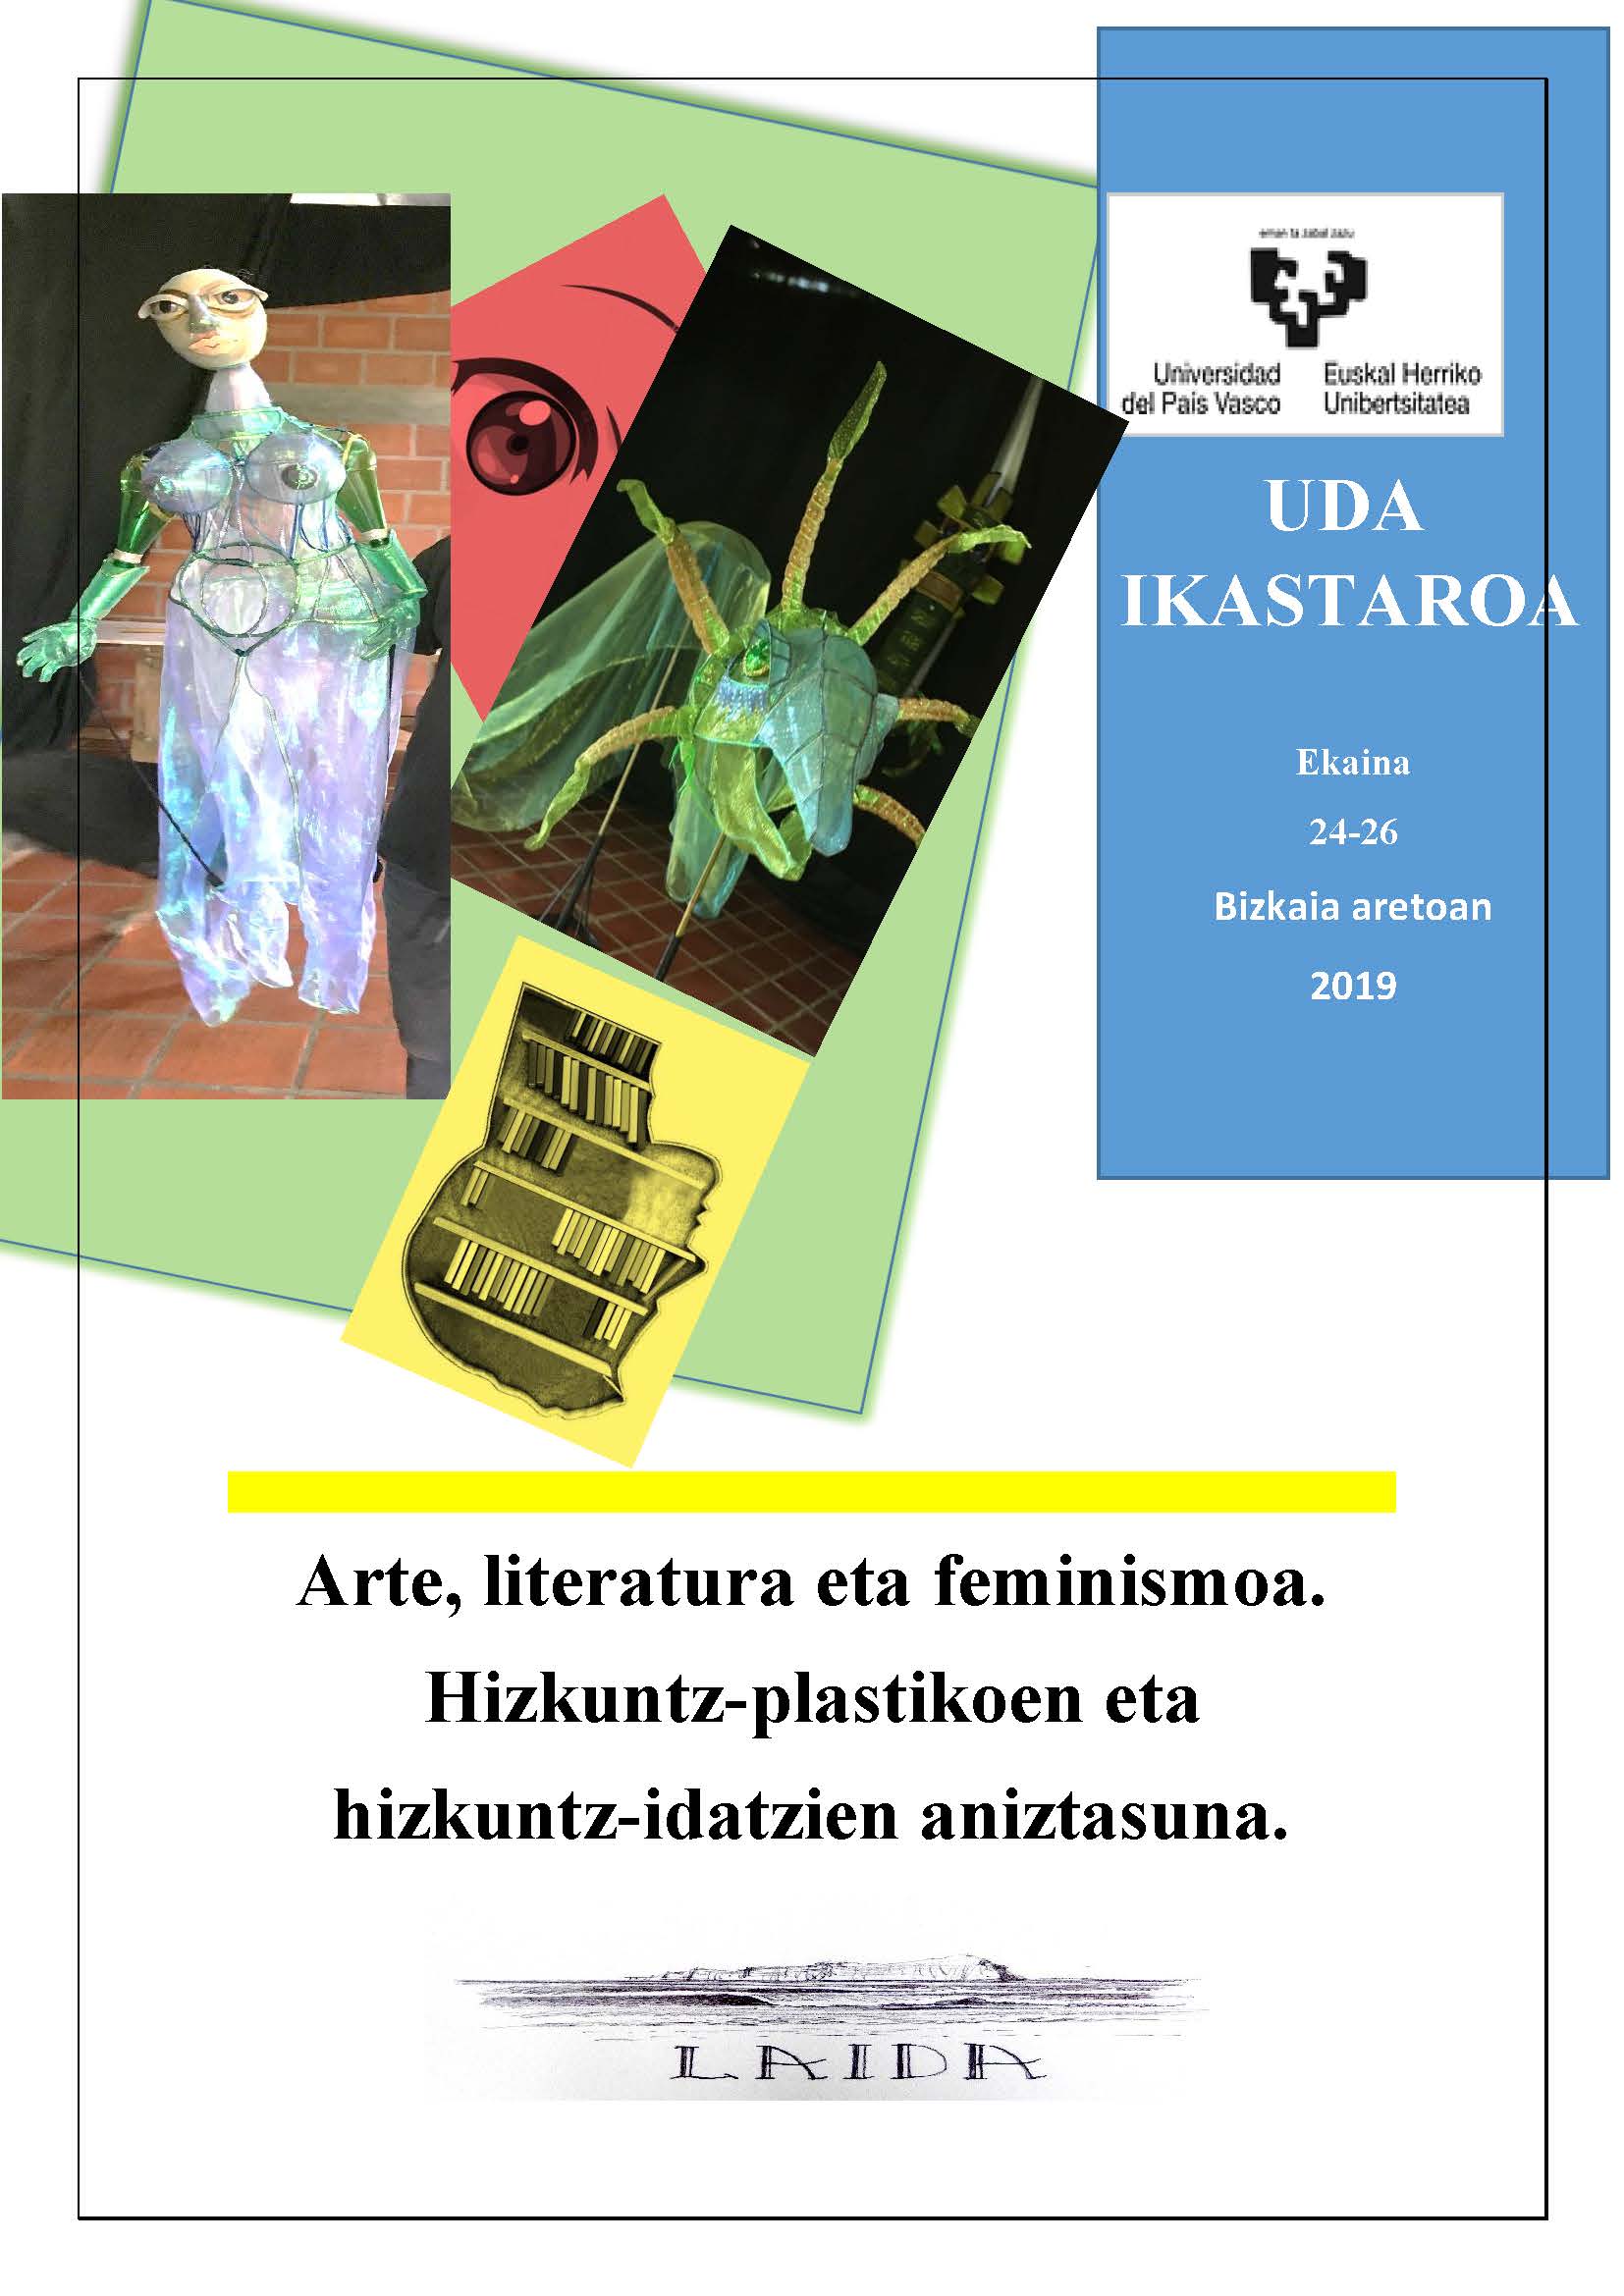 Arte, literatura y feminismo. Diversidad de los lenguajes-plasticos y lenguajes-escritos